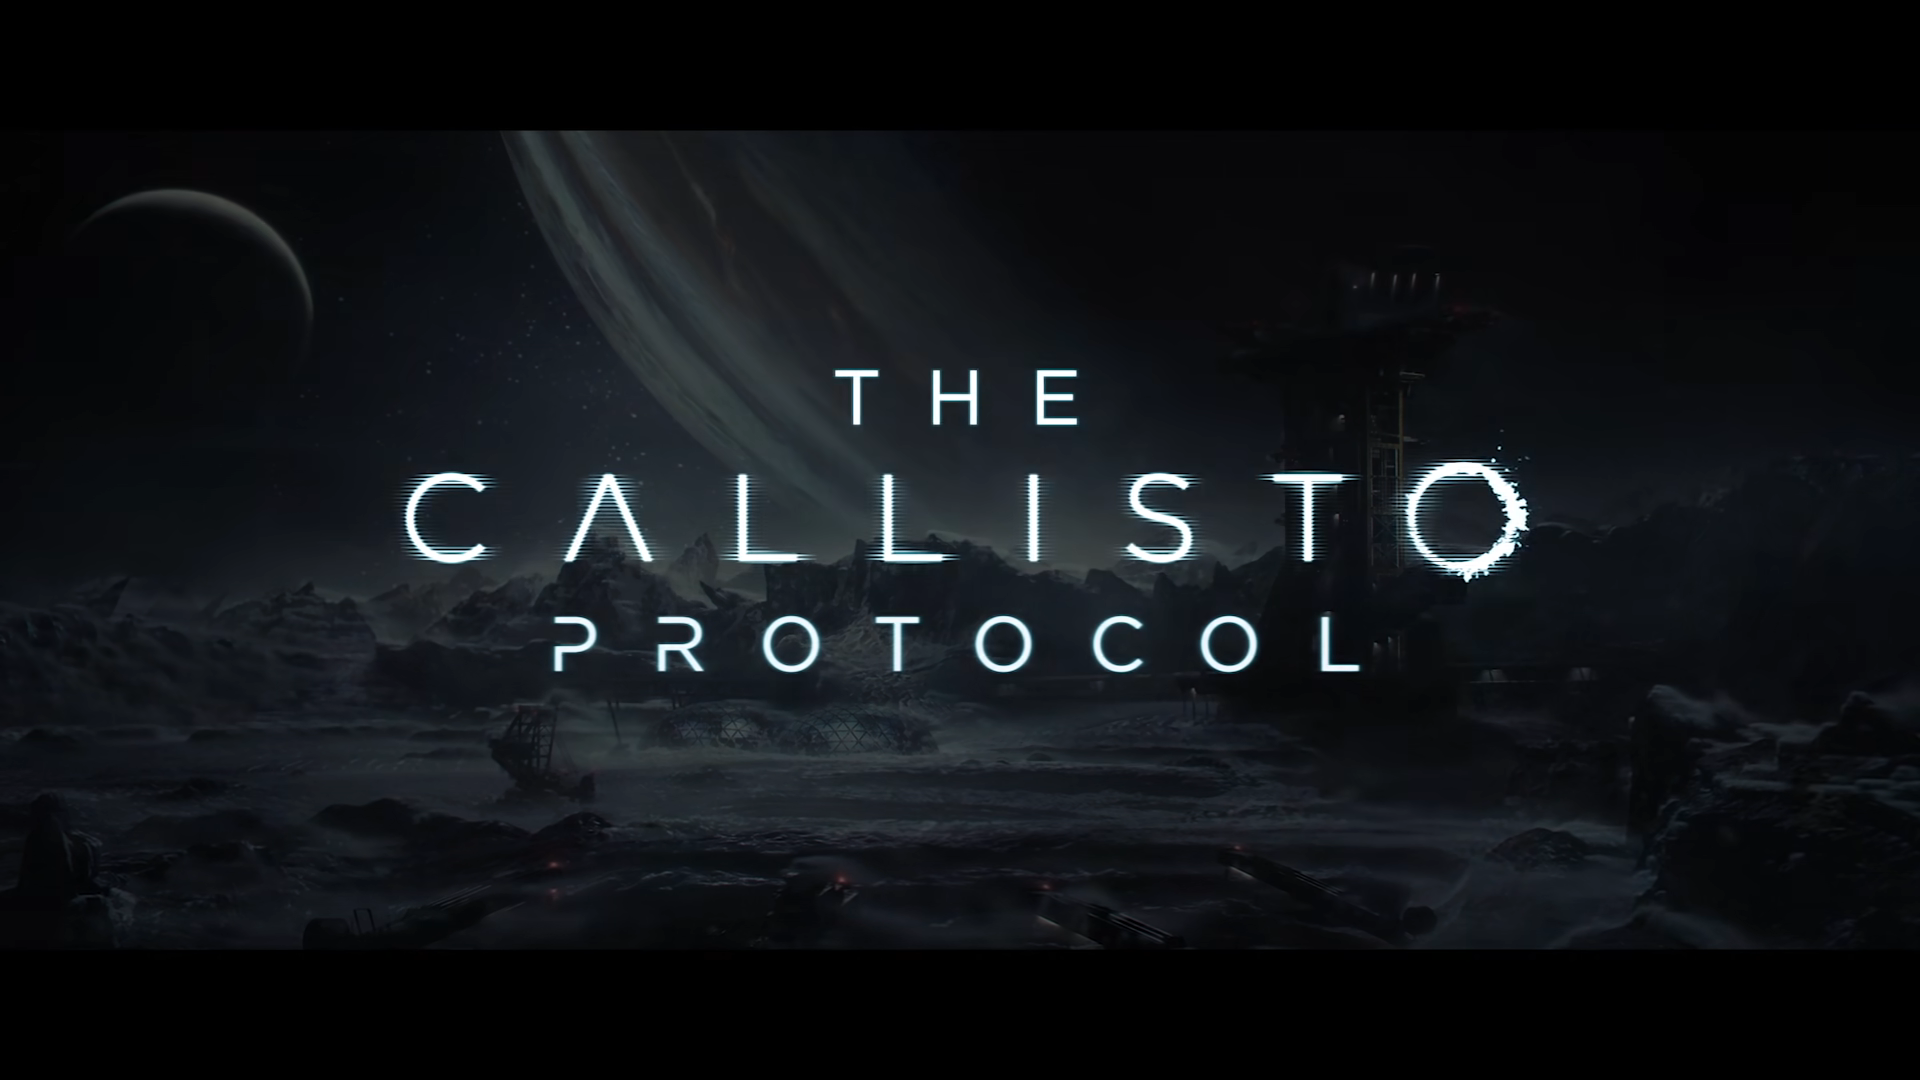 Das Callisto-Protokoll nimmt Gestalt an Titel